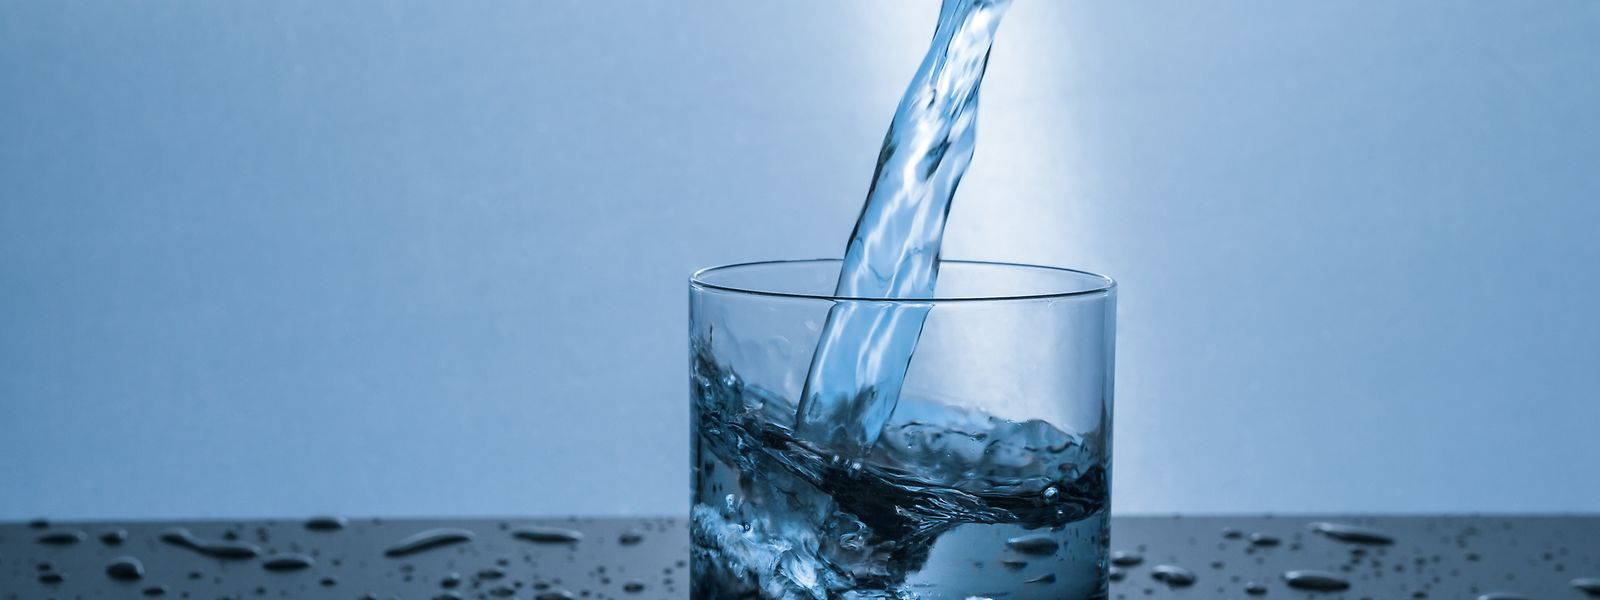 Würde weniger Wasser aus Plastikflaschen konsumiert, könnten europäische Haushalte mehr als 600 Millionen Euro jährlich sparen, rechnet die EU-Kommission vor. 